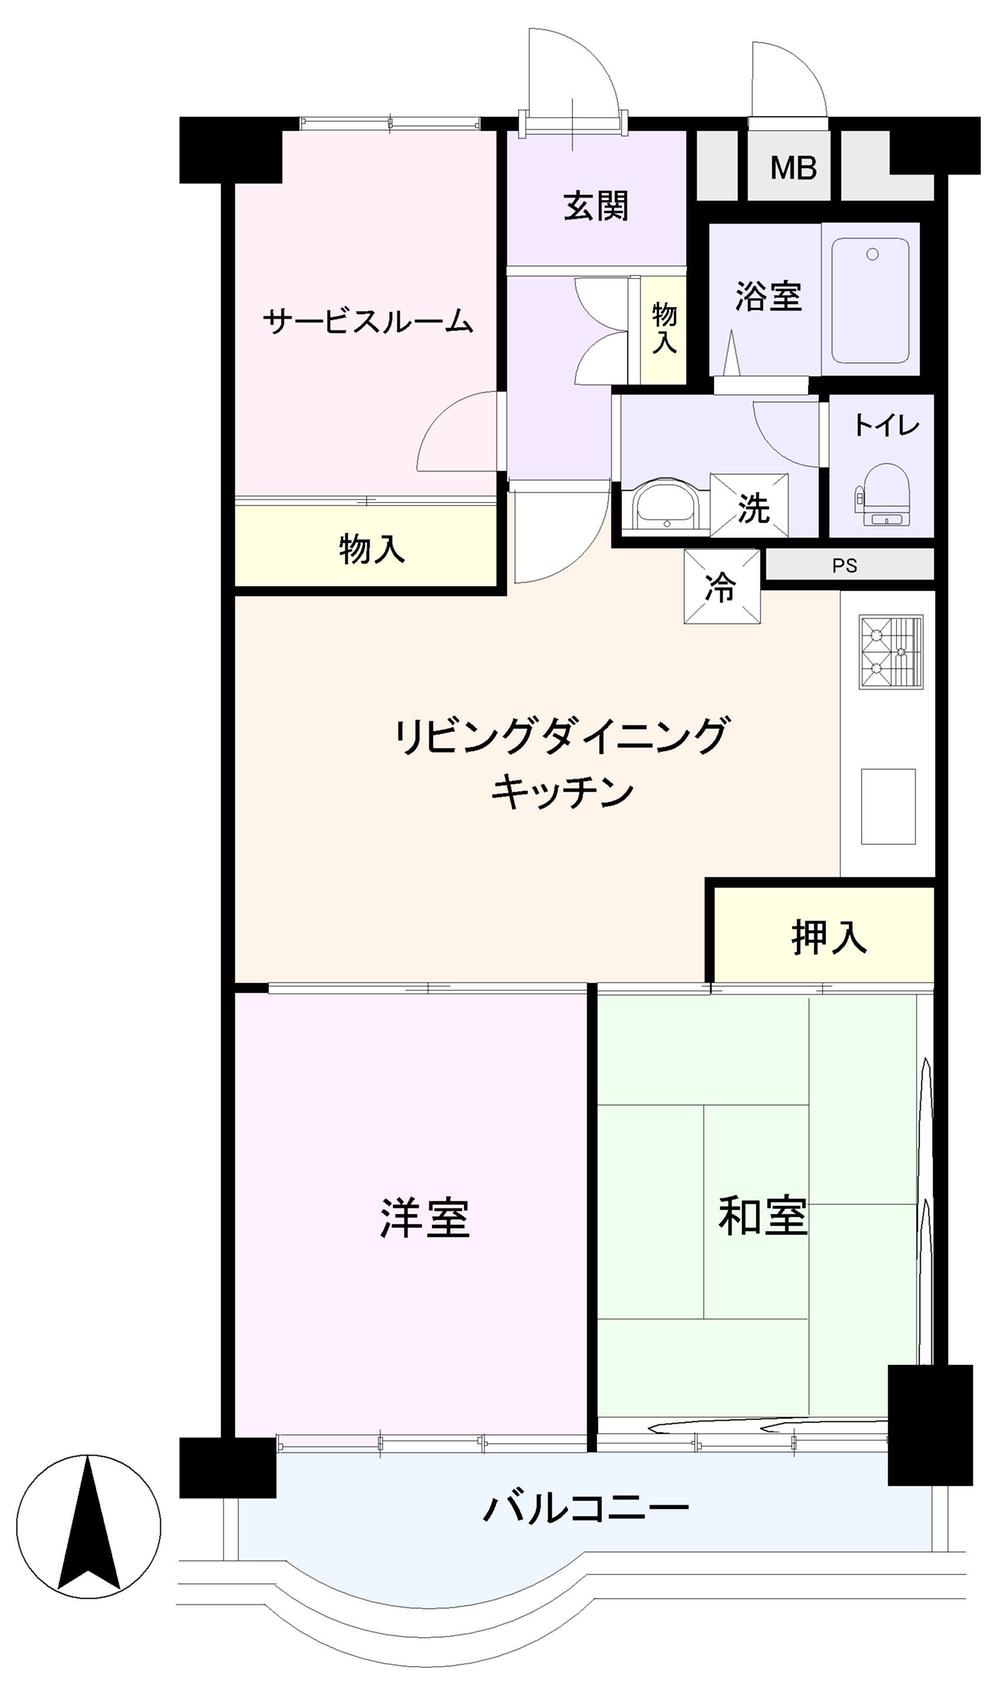 Floor plan. 2LDK + S (storeroom), Price 21,800,000 yen, Footprint 58.8 sq m , Balcony area 6.6 sq m